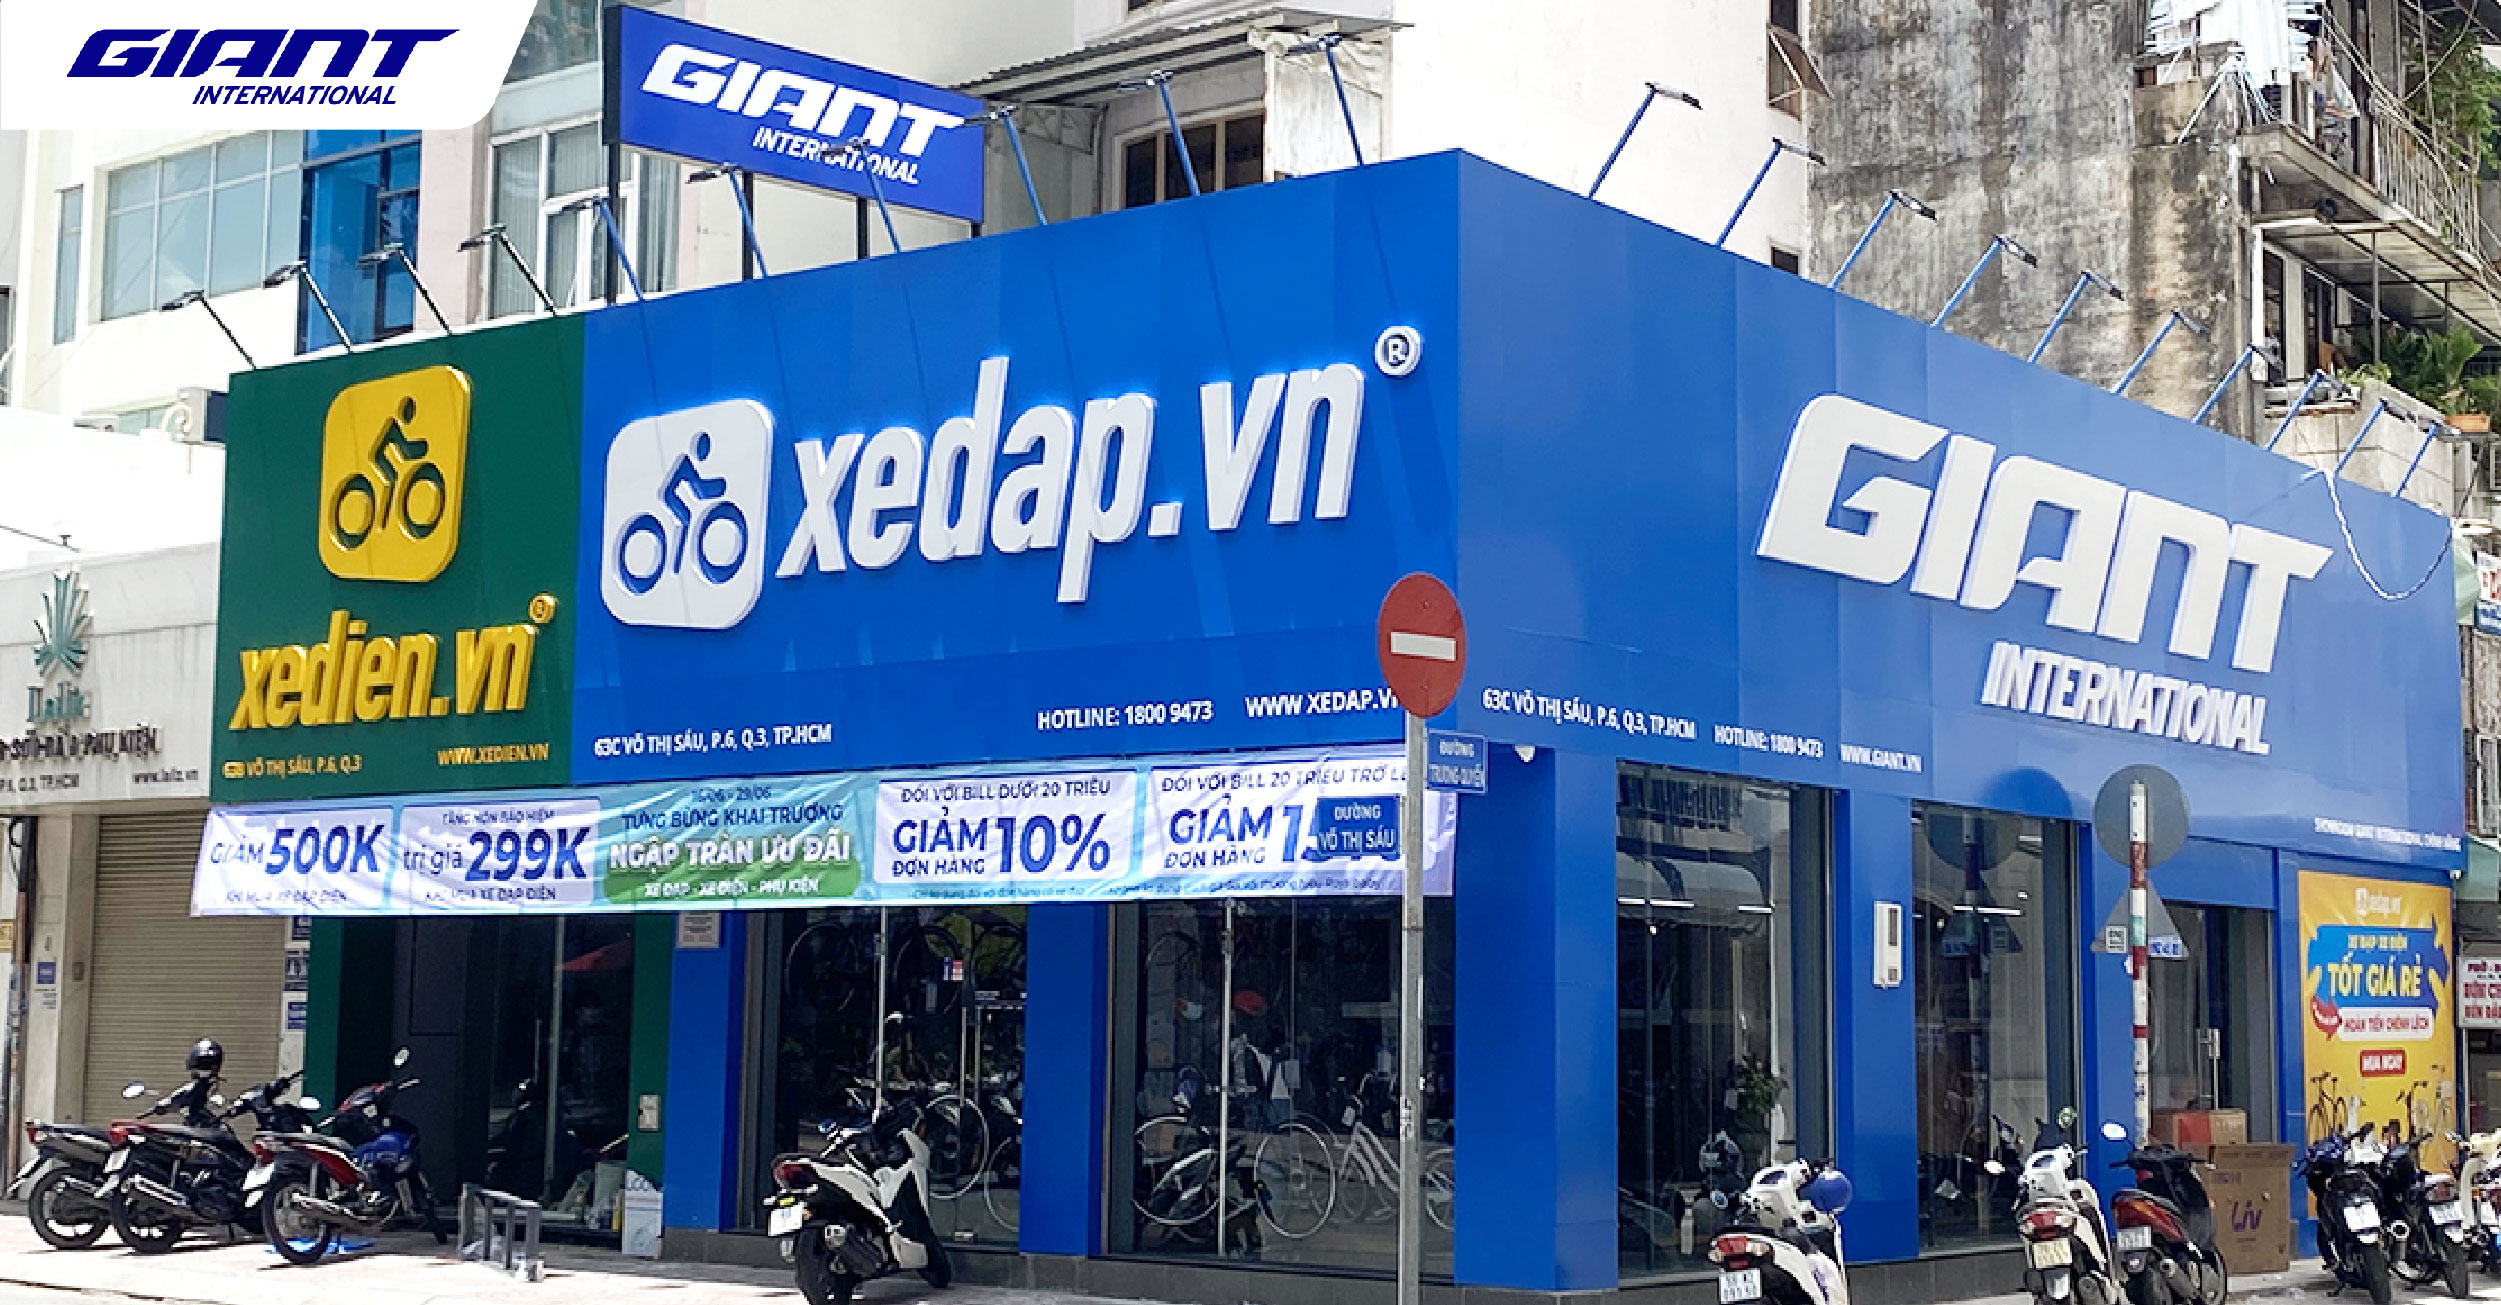 Xuất hiện đại lý xe đạp Giant – Xedap.vn thứ 12 tại 63C Võ Thị Sáu, Quận 3, TP. HCM